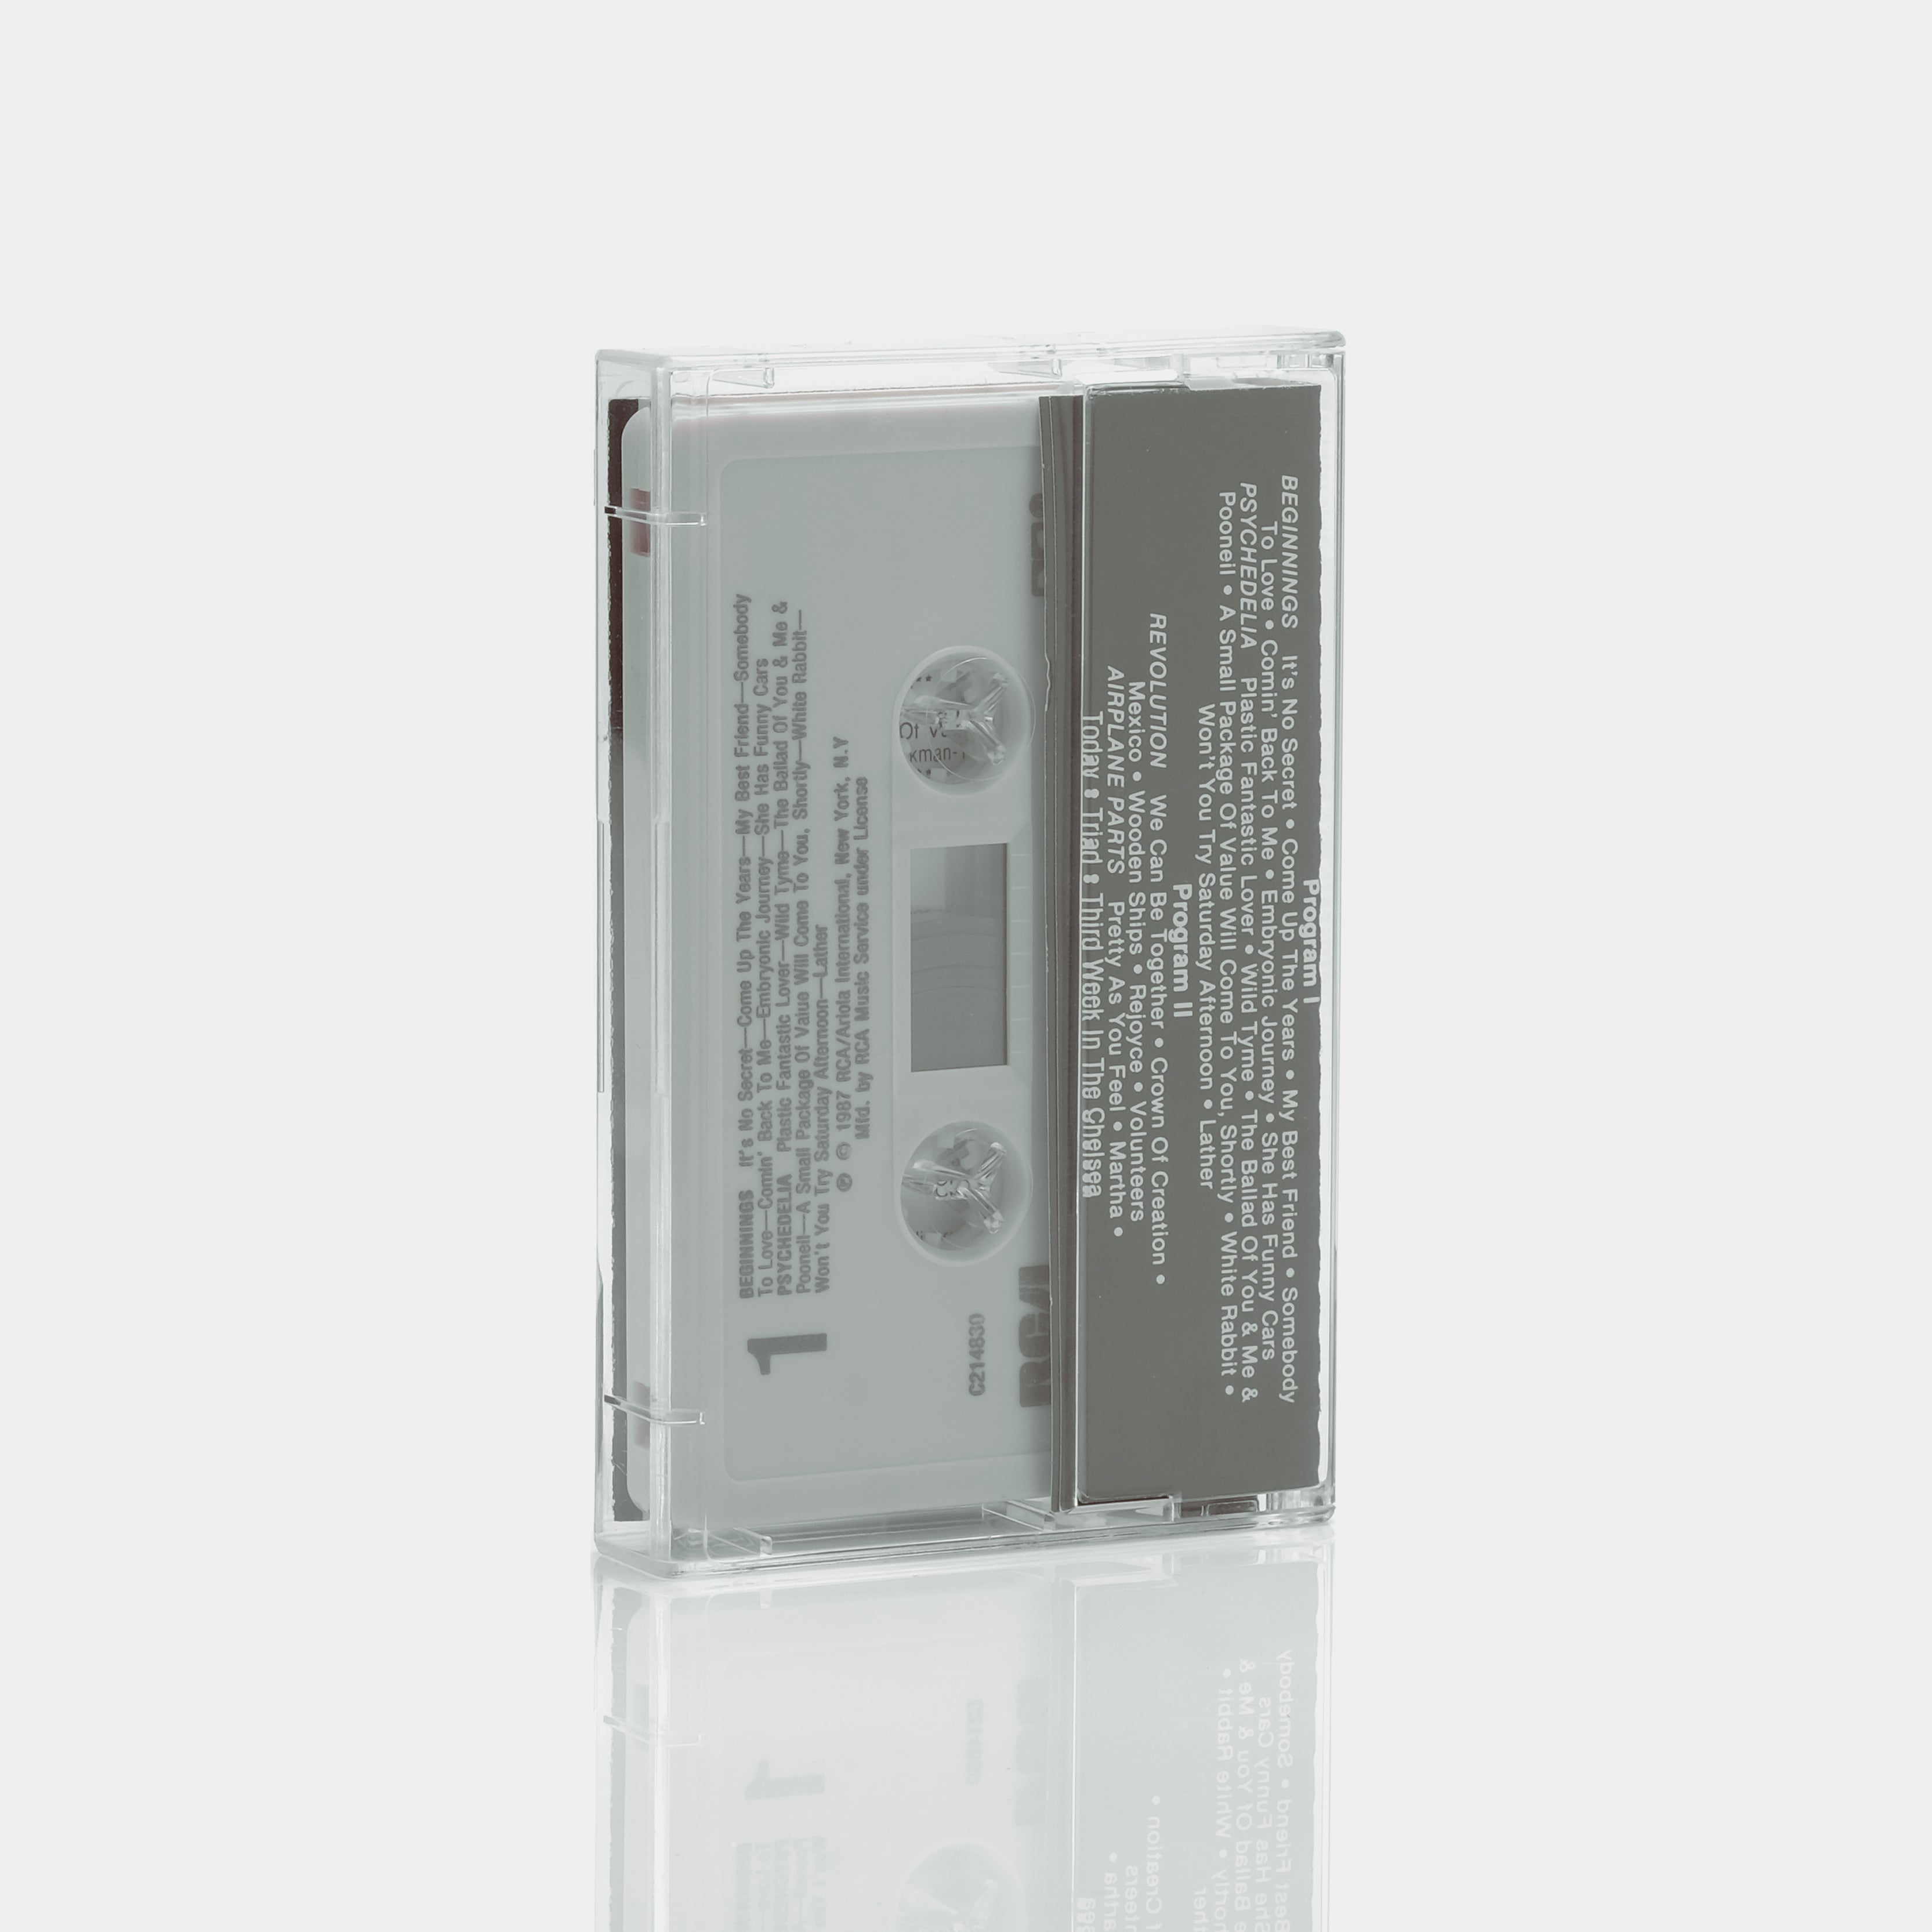 Jefferson Airplane - 2400 Fulton Street Cassette Tape